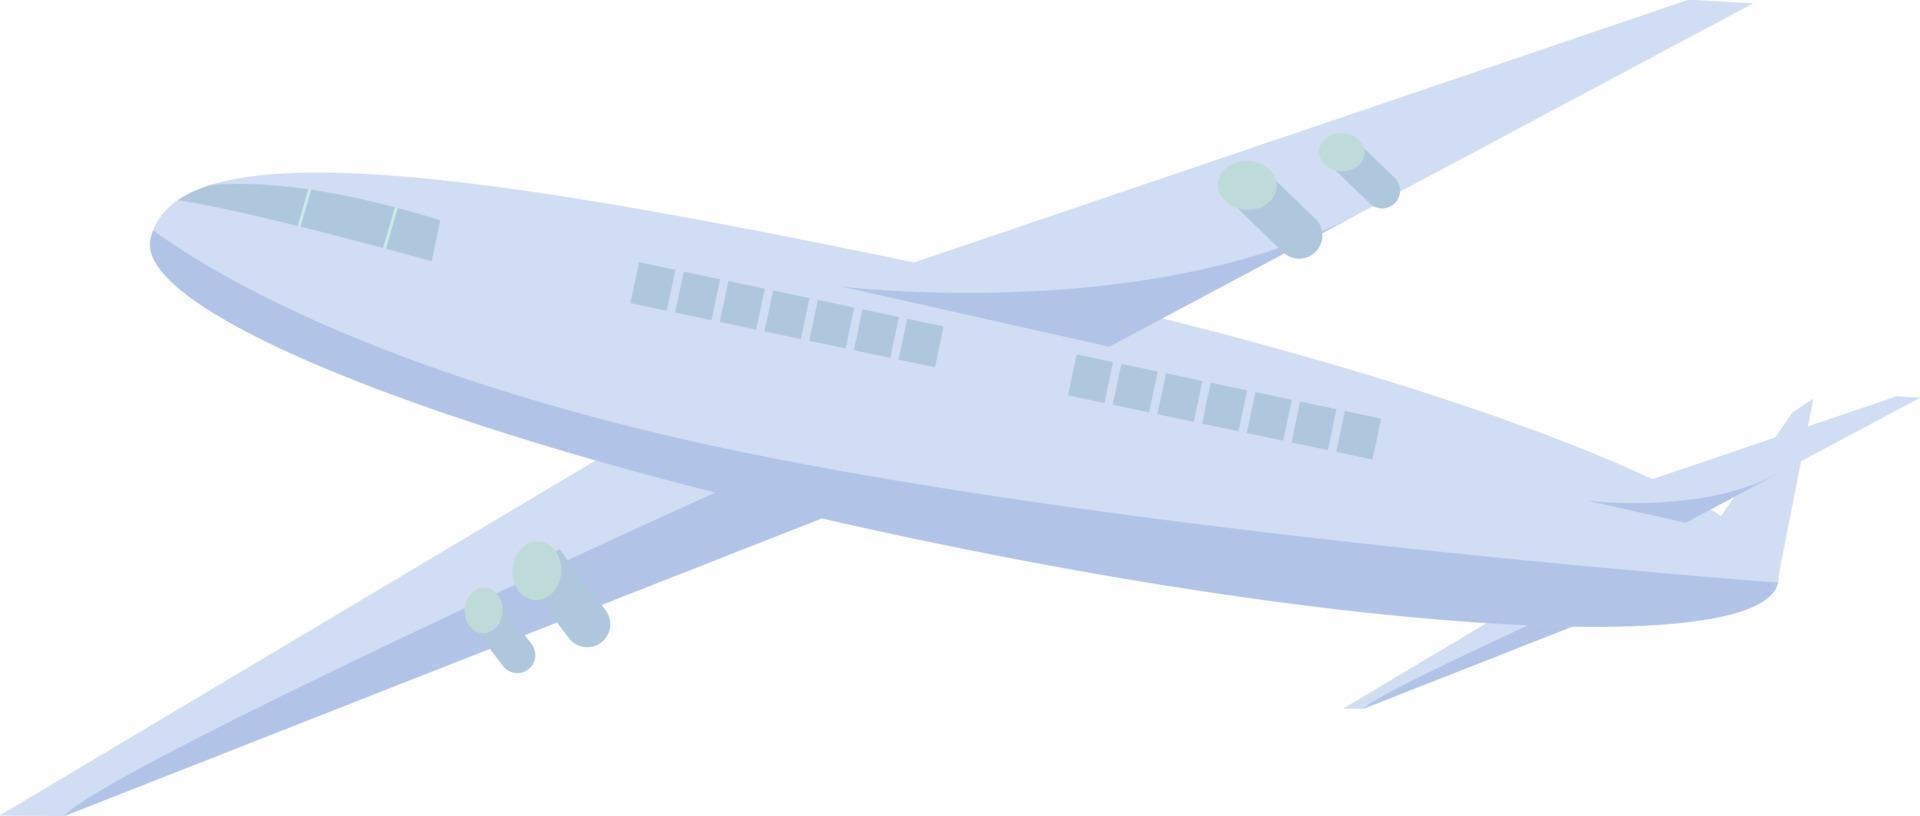 Flug mit dem halbflachen Farbvektorobjekt des Passagierflugzeugs. sicheres Flugzeug. Artikel in voller Größe auf weiß. reisen mit dem flugzeug einfache karikaturartillustration für webgrafikdesign und -animation vektor